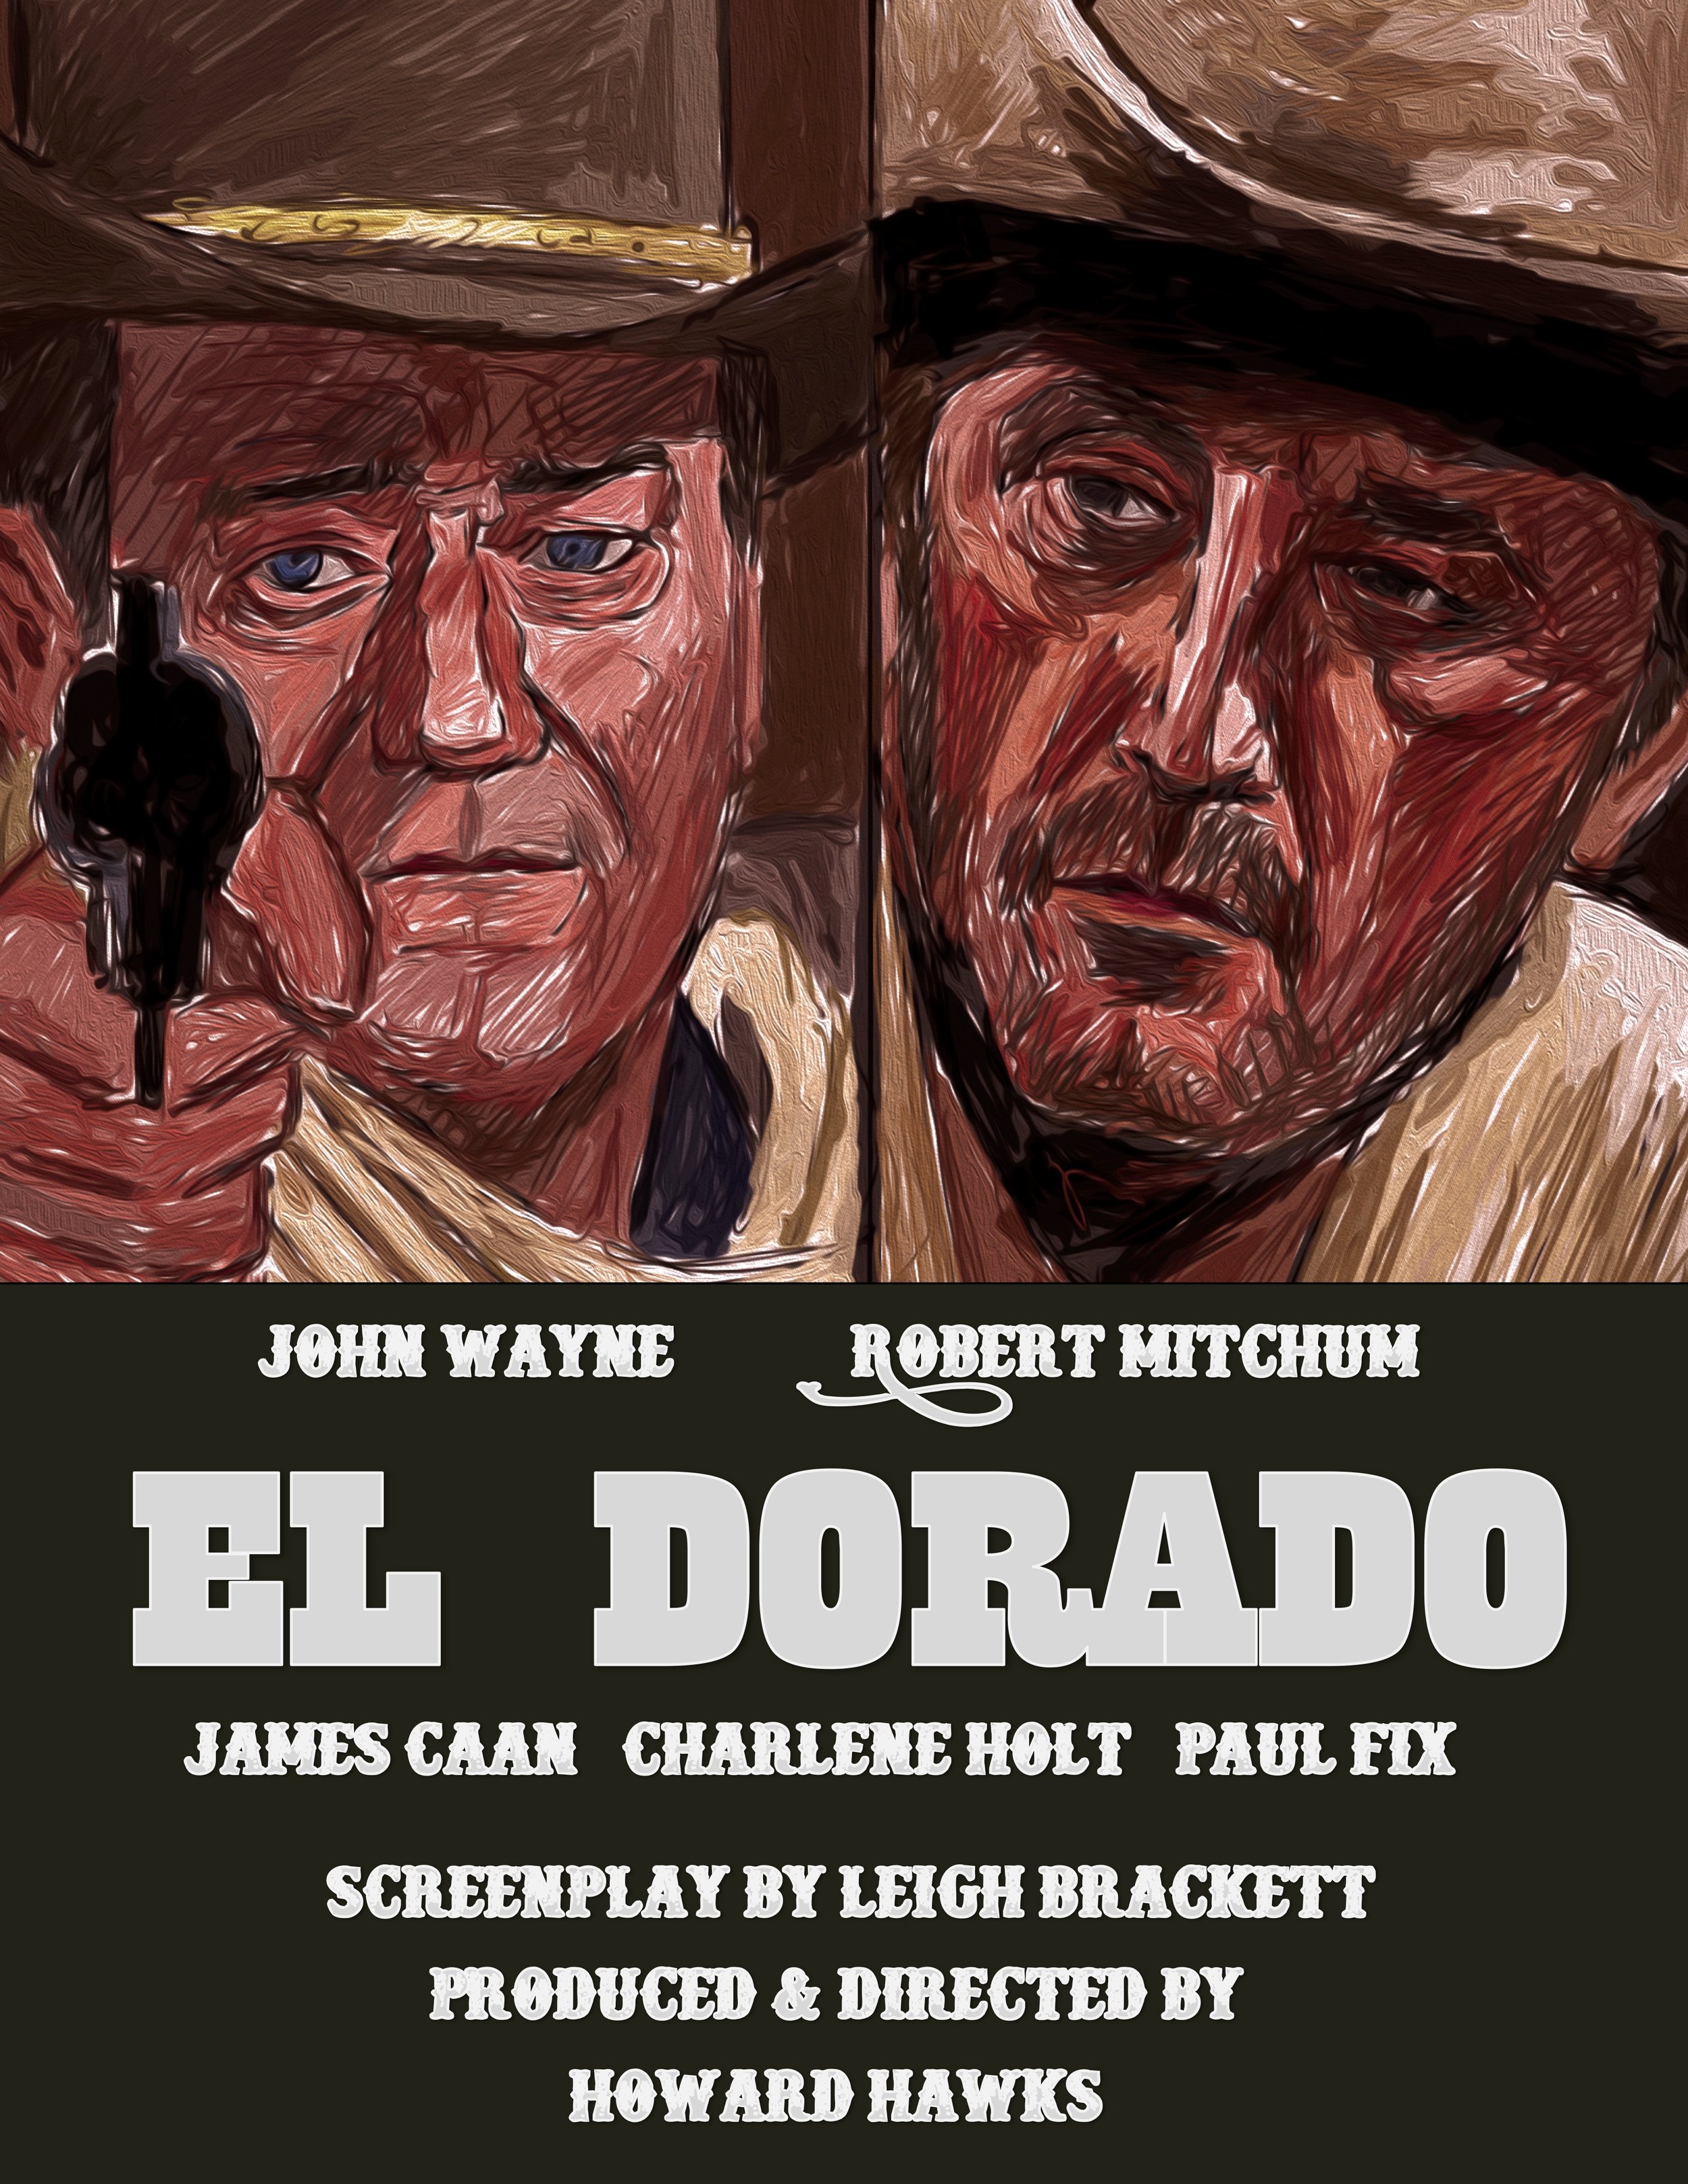 El Dorado (1966)